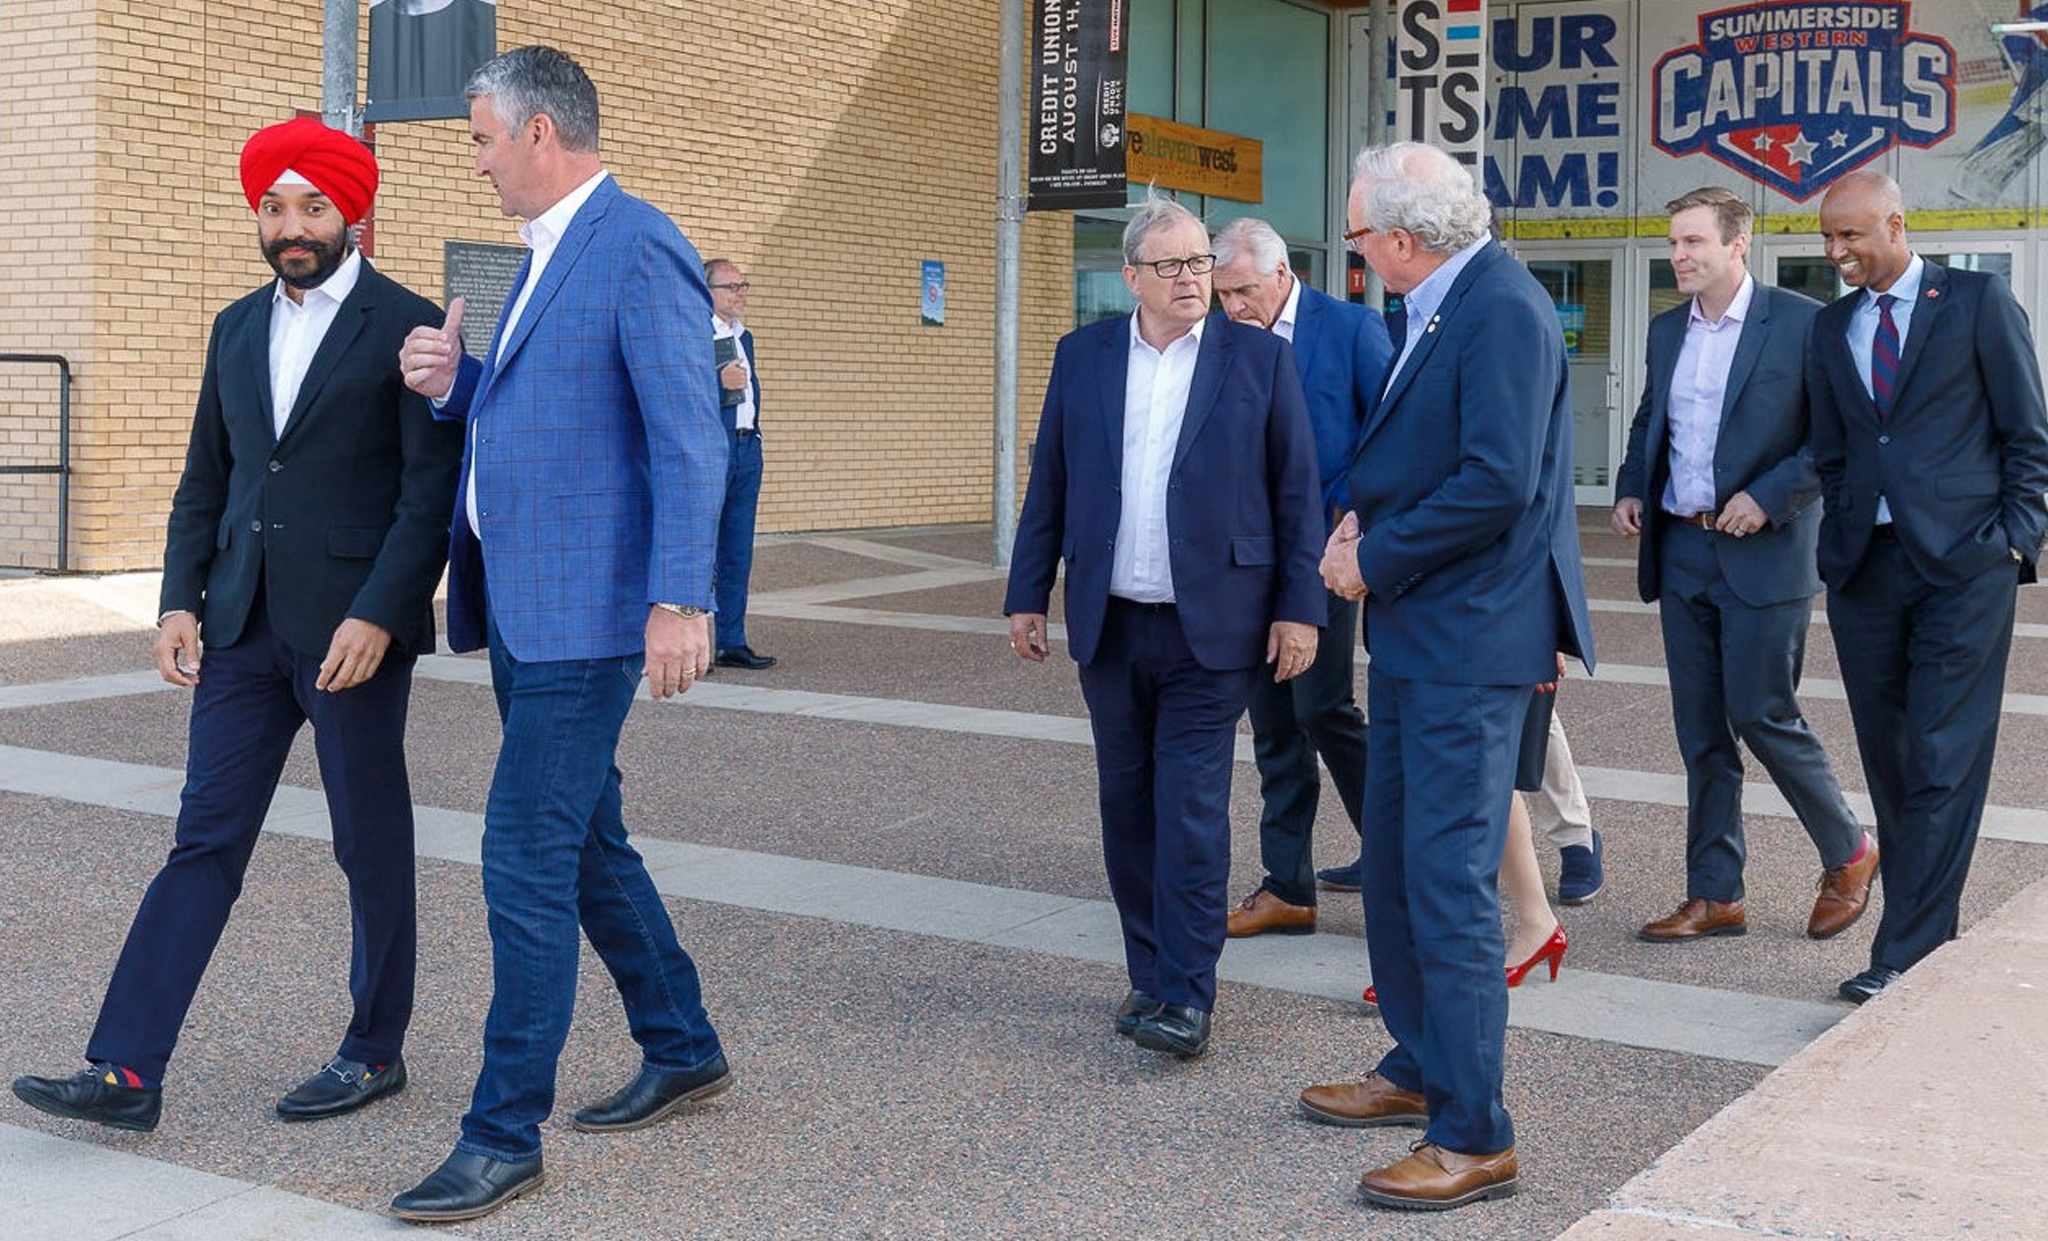 Le 10 juillet, 2018 - Des ministres fédéraux et les premiers ministres provinciaux arrivent à Summerside (Î.‑P.‑É.) pour la réunion du Comité de direction de la Stratégie de croissance pour l’Atlantique afin de discuter des résultats à ce jour et d’annoncer de nouvelles initiatives.